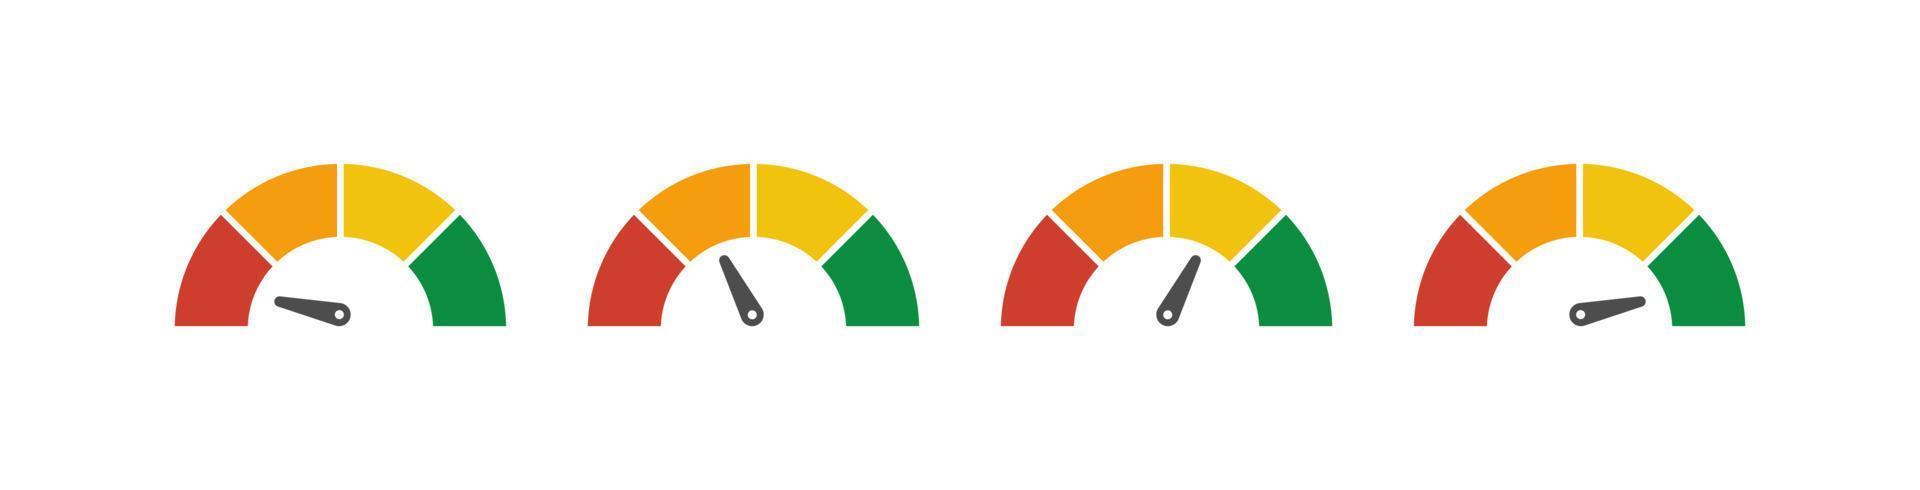 conjunto de medidor de velocímetro vectorial con flecha para tablero con indicadores verdes, amarillos y rojos. calibre del tacómetro. niveles bajo, medio, alto y de riesgo. bitcoin índice de miedo y codicia criptomoneda vector